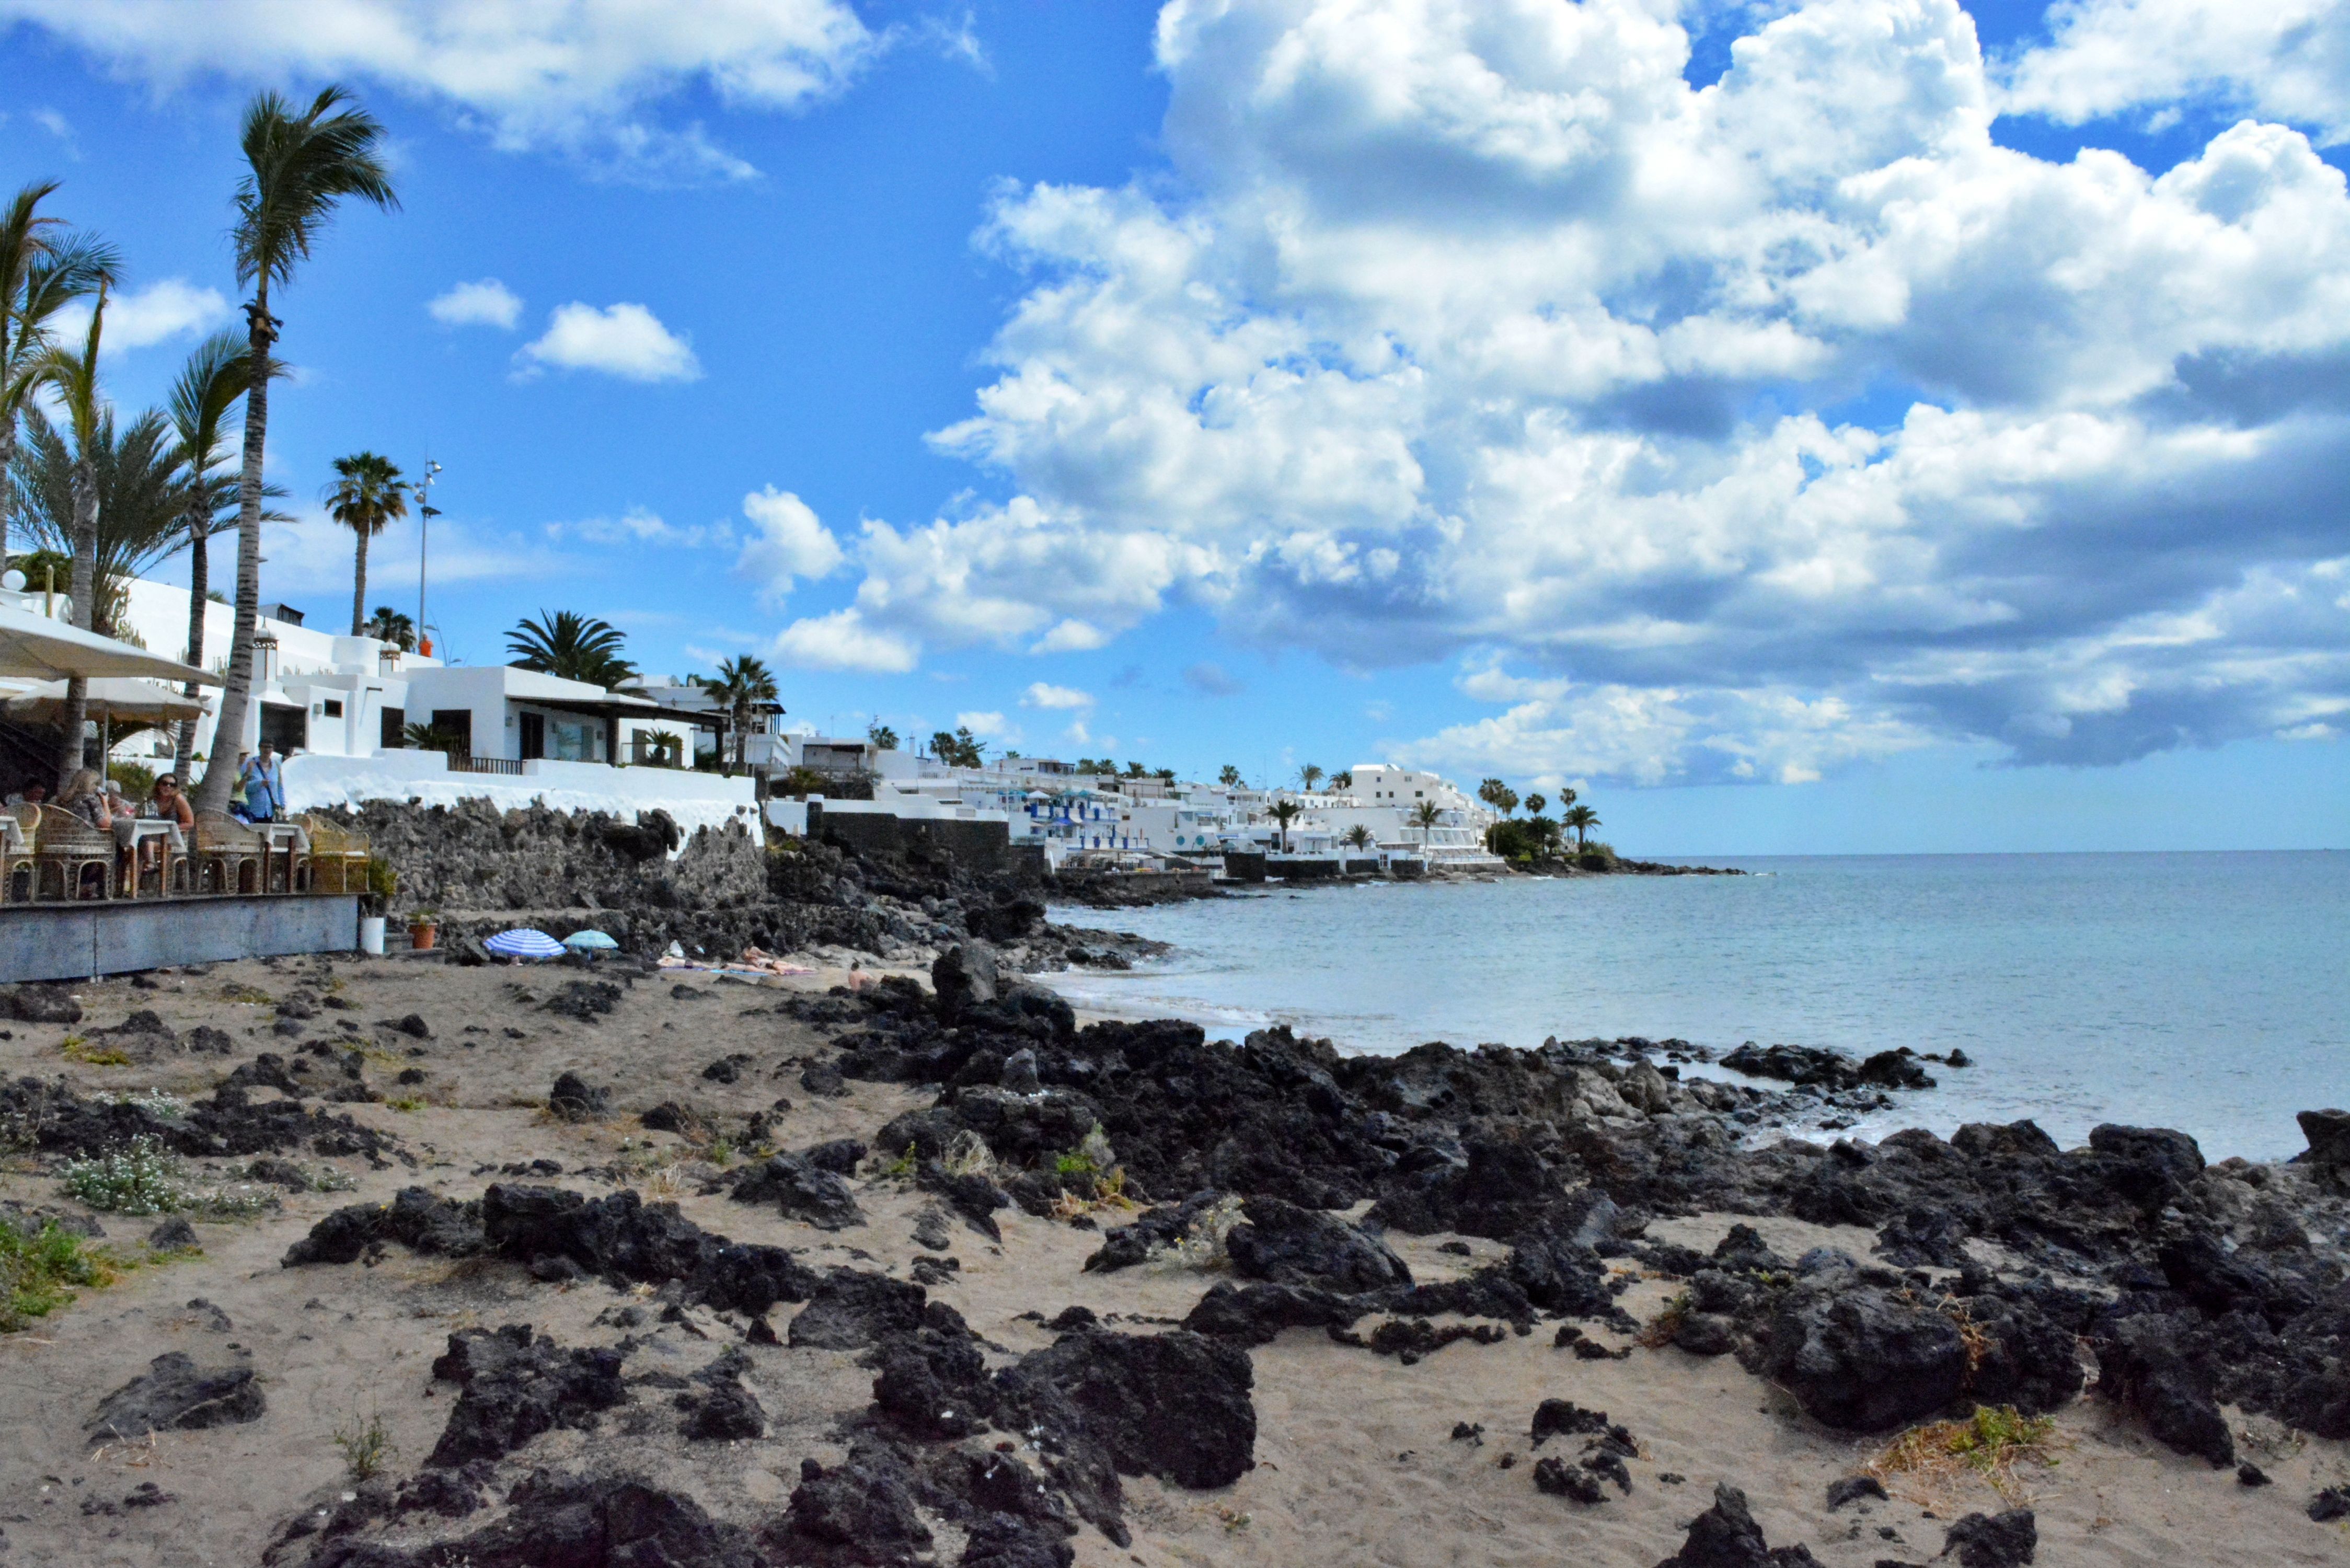 El litoral del municipio de Tías, donde se prevé la instalación de jaulas marinas. Foto: Ayuntamiento de Tías.